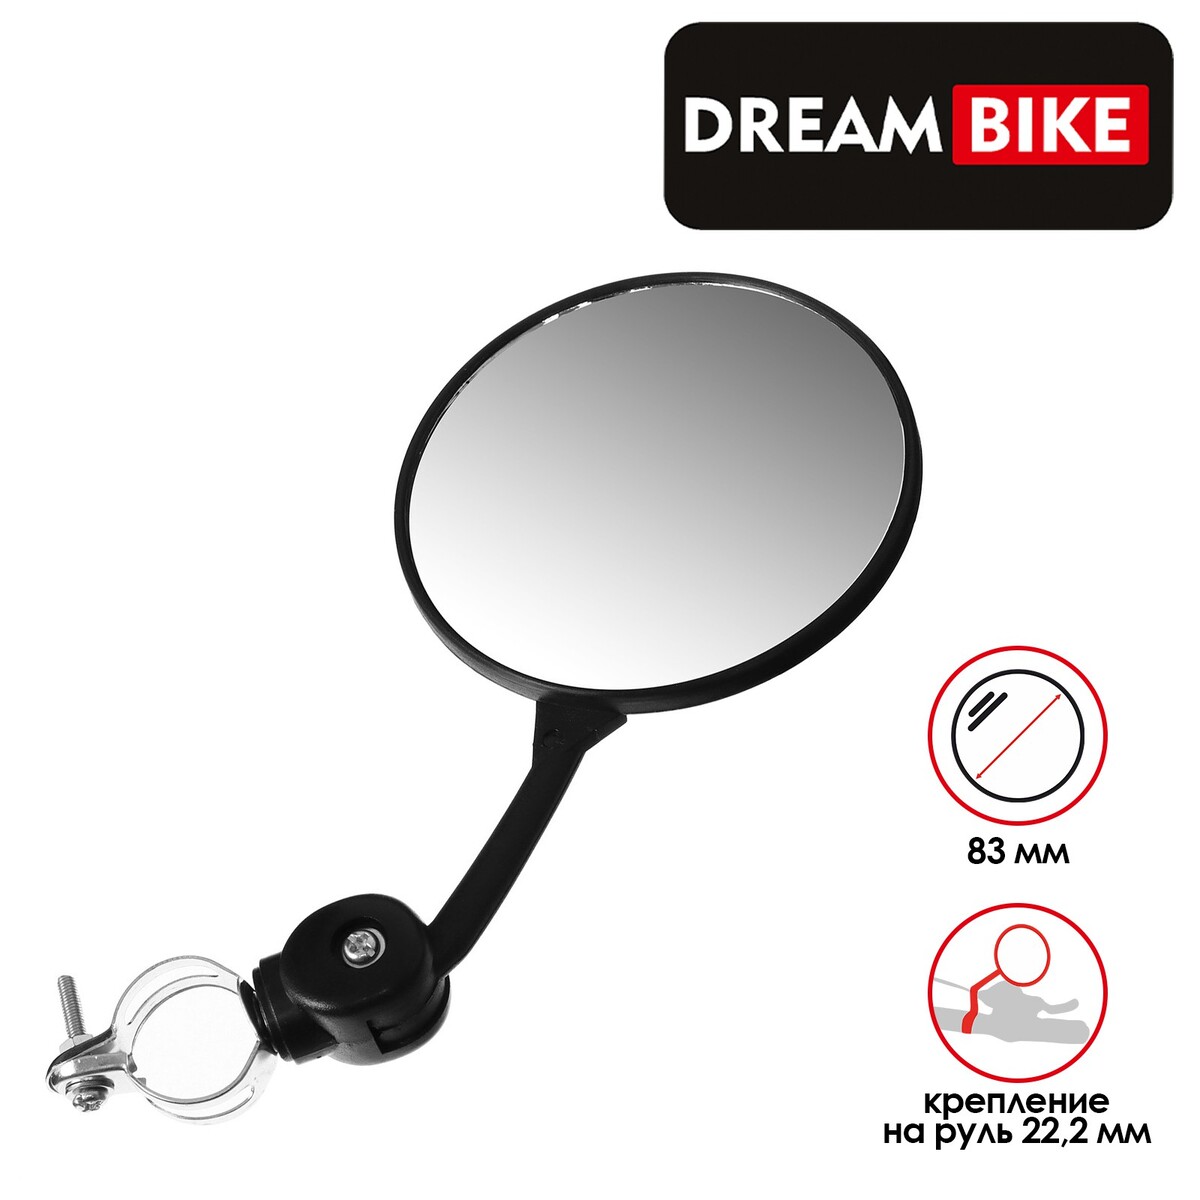 Зеркало заднего вида dream bike, jy-4 5308340, Dream Bike